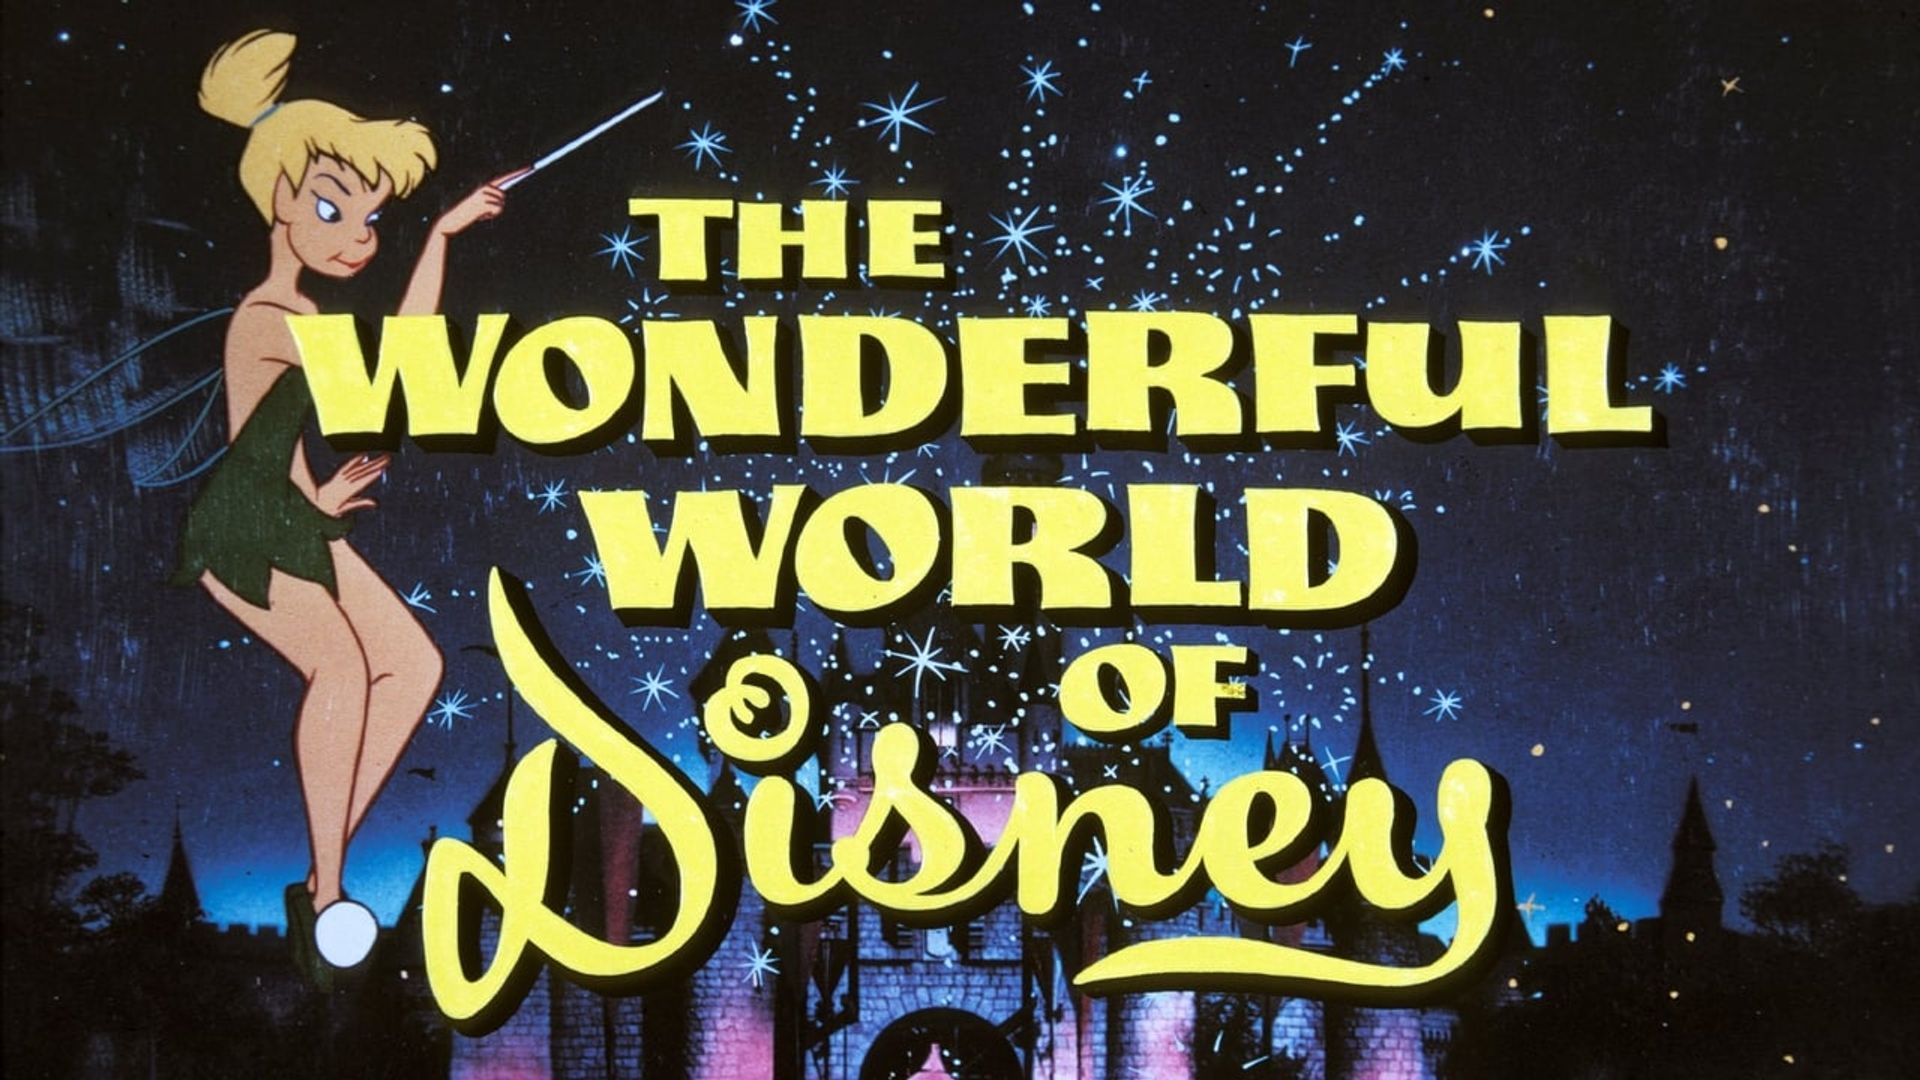 The Wonderful World of Disney background